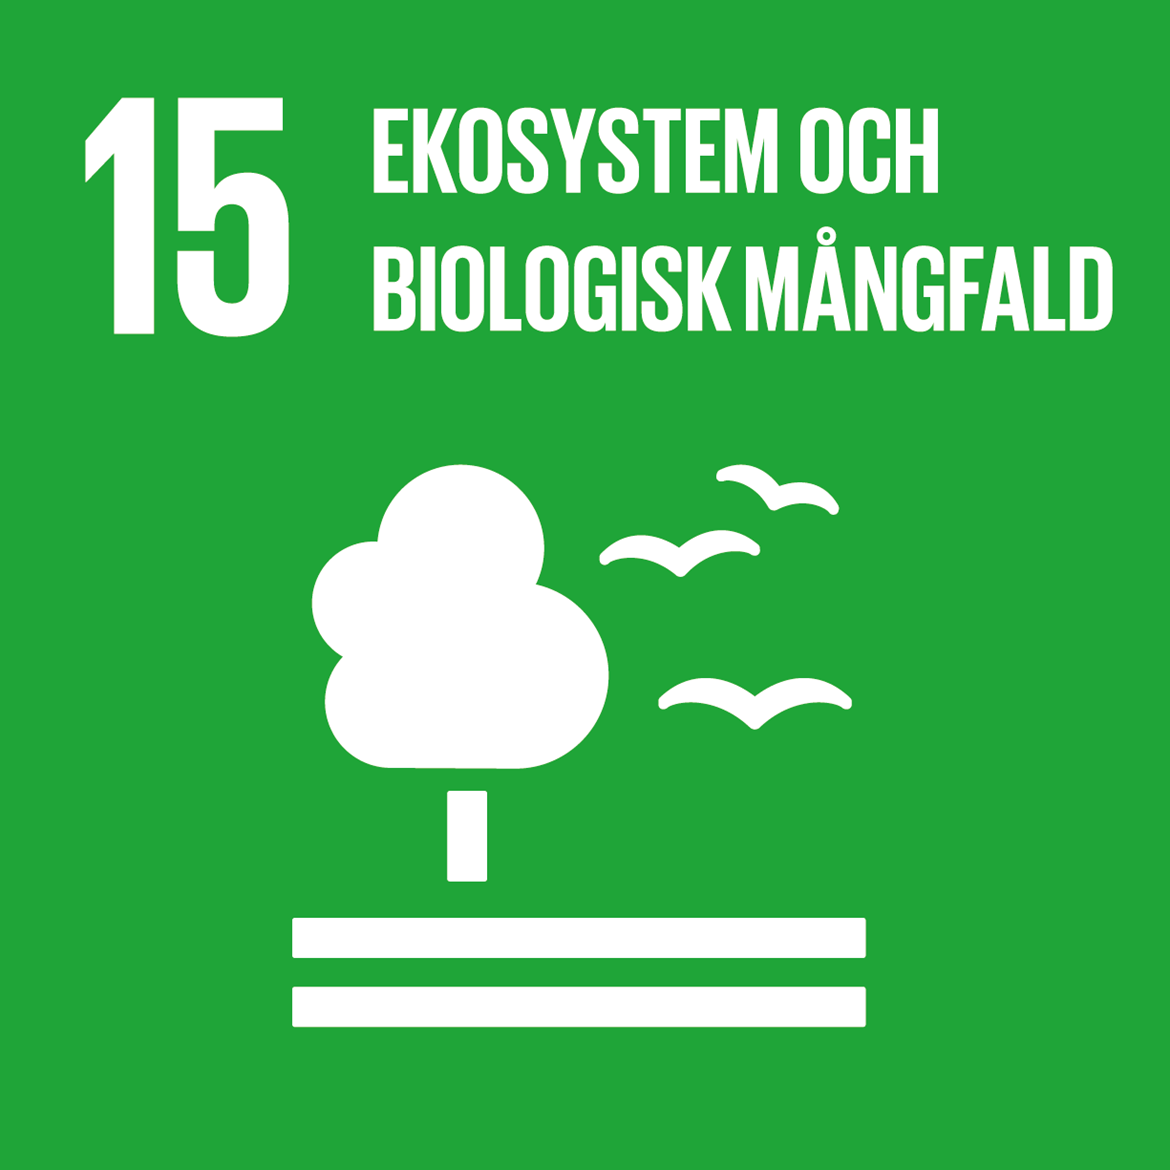 15 - Ekosystem och biologisk mångfald